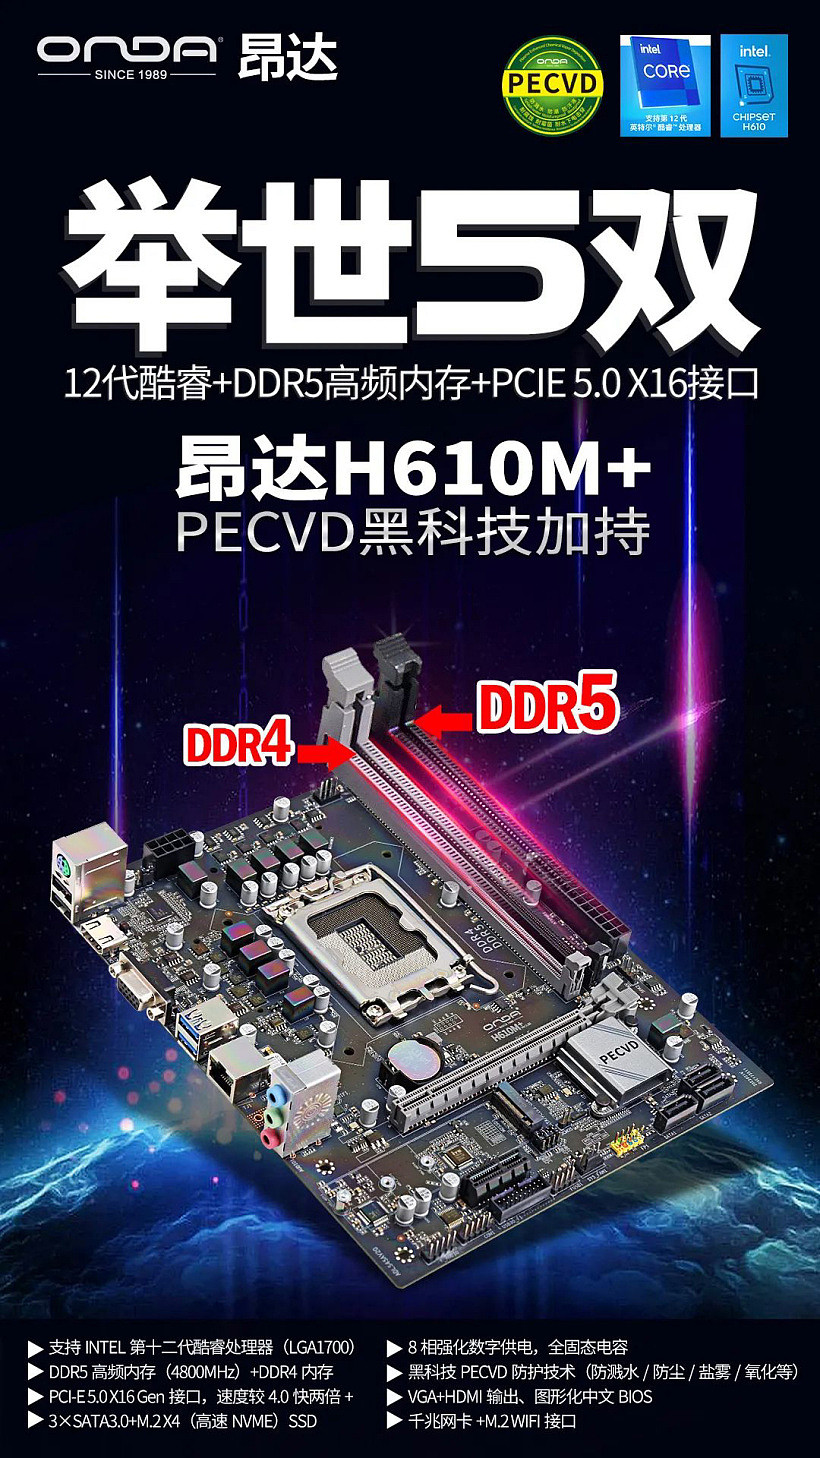 支持 DDR5 / DDR4 内存，昂达 H610M + 主板价格公布：599 元 - 1